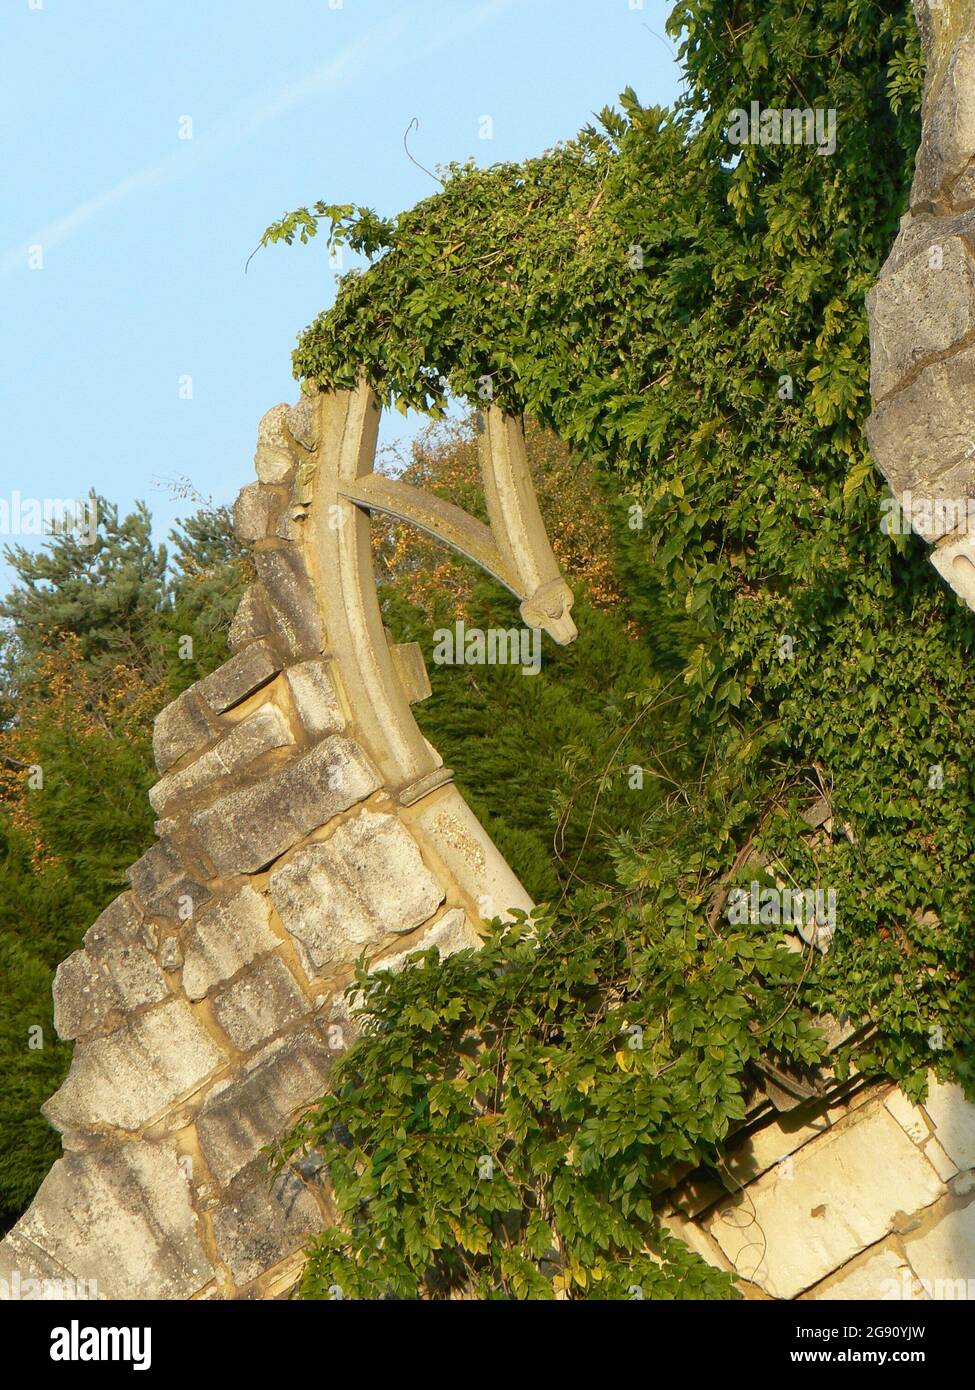 Ivy che copre un arco in pietra rovinata su un edificio abbandonato e sbriciolante. La luce della sera d'oro illumina la pietra; gli alberi sullo sfondo e un blu Foto Stock